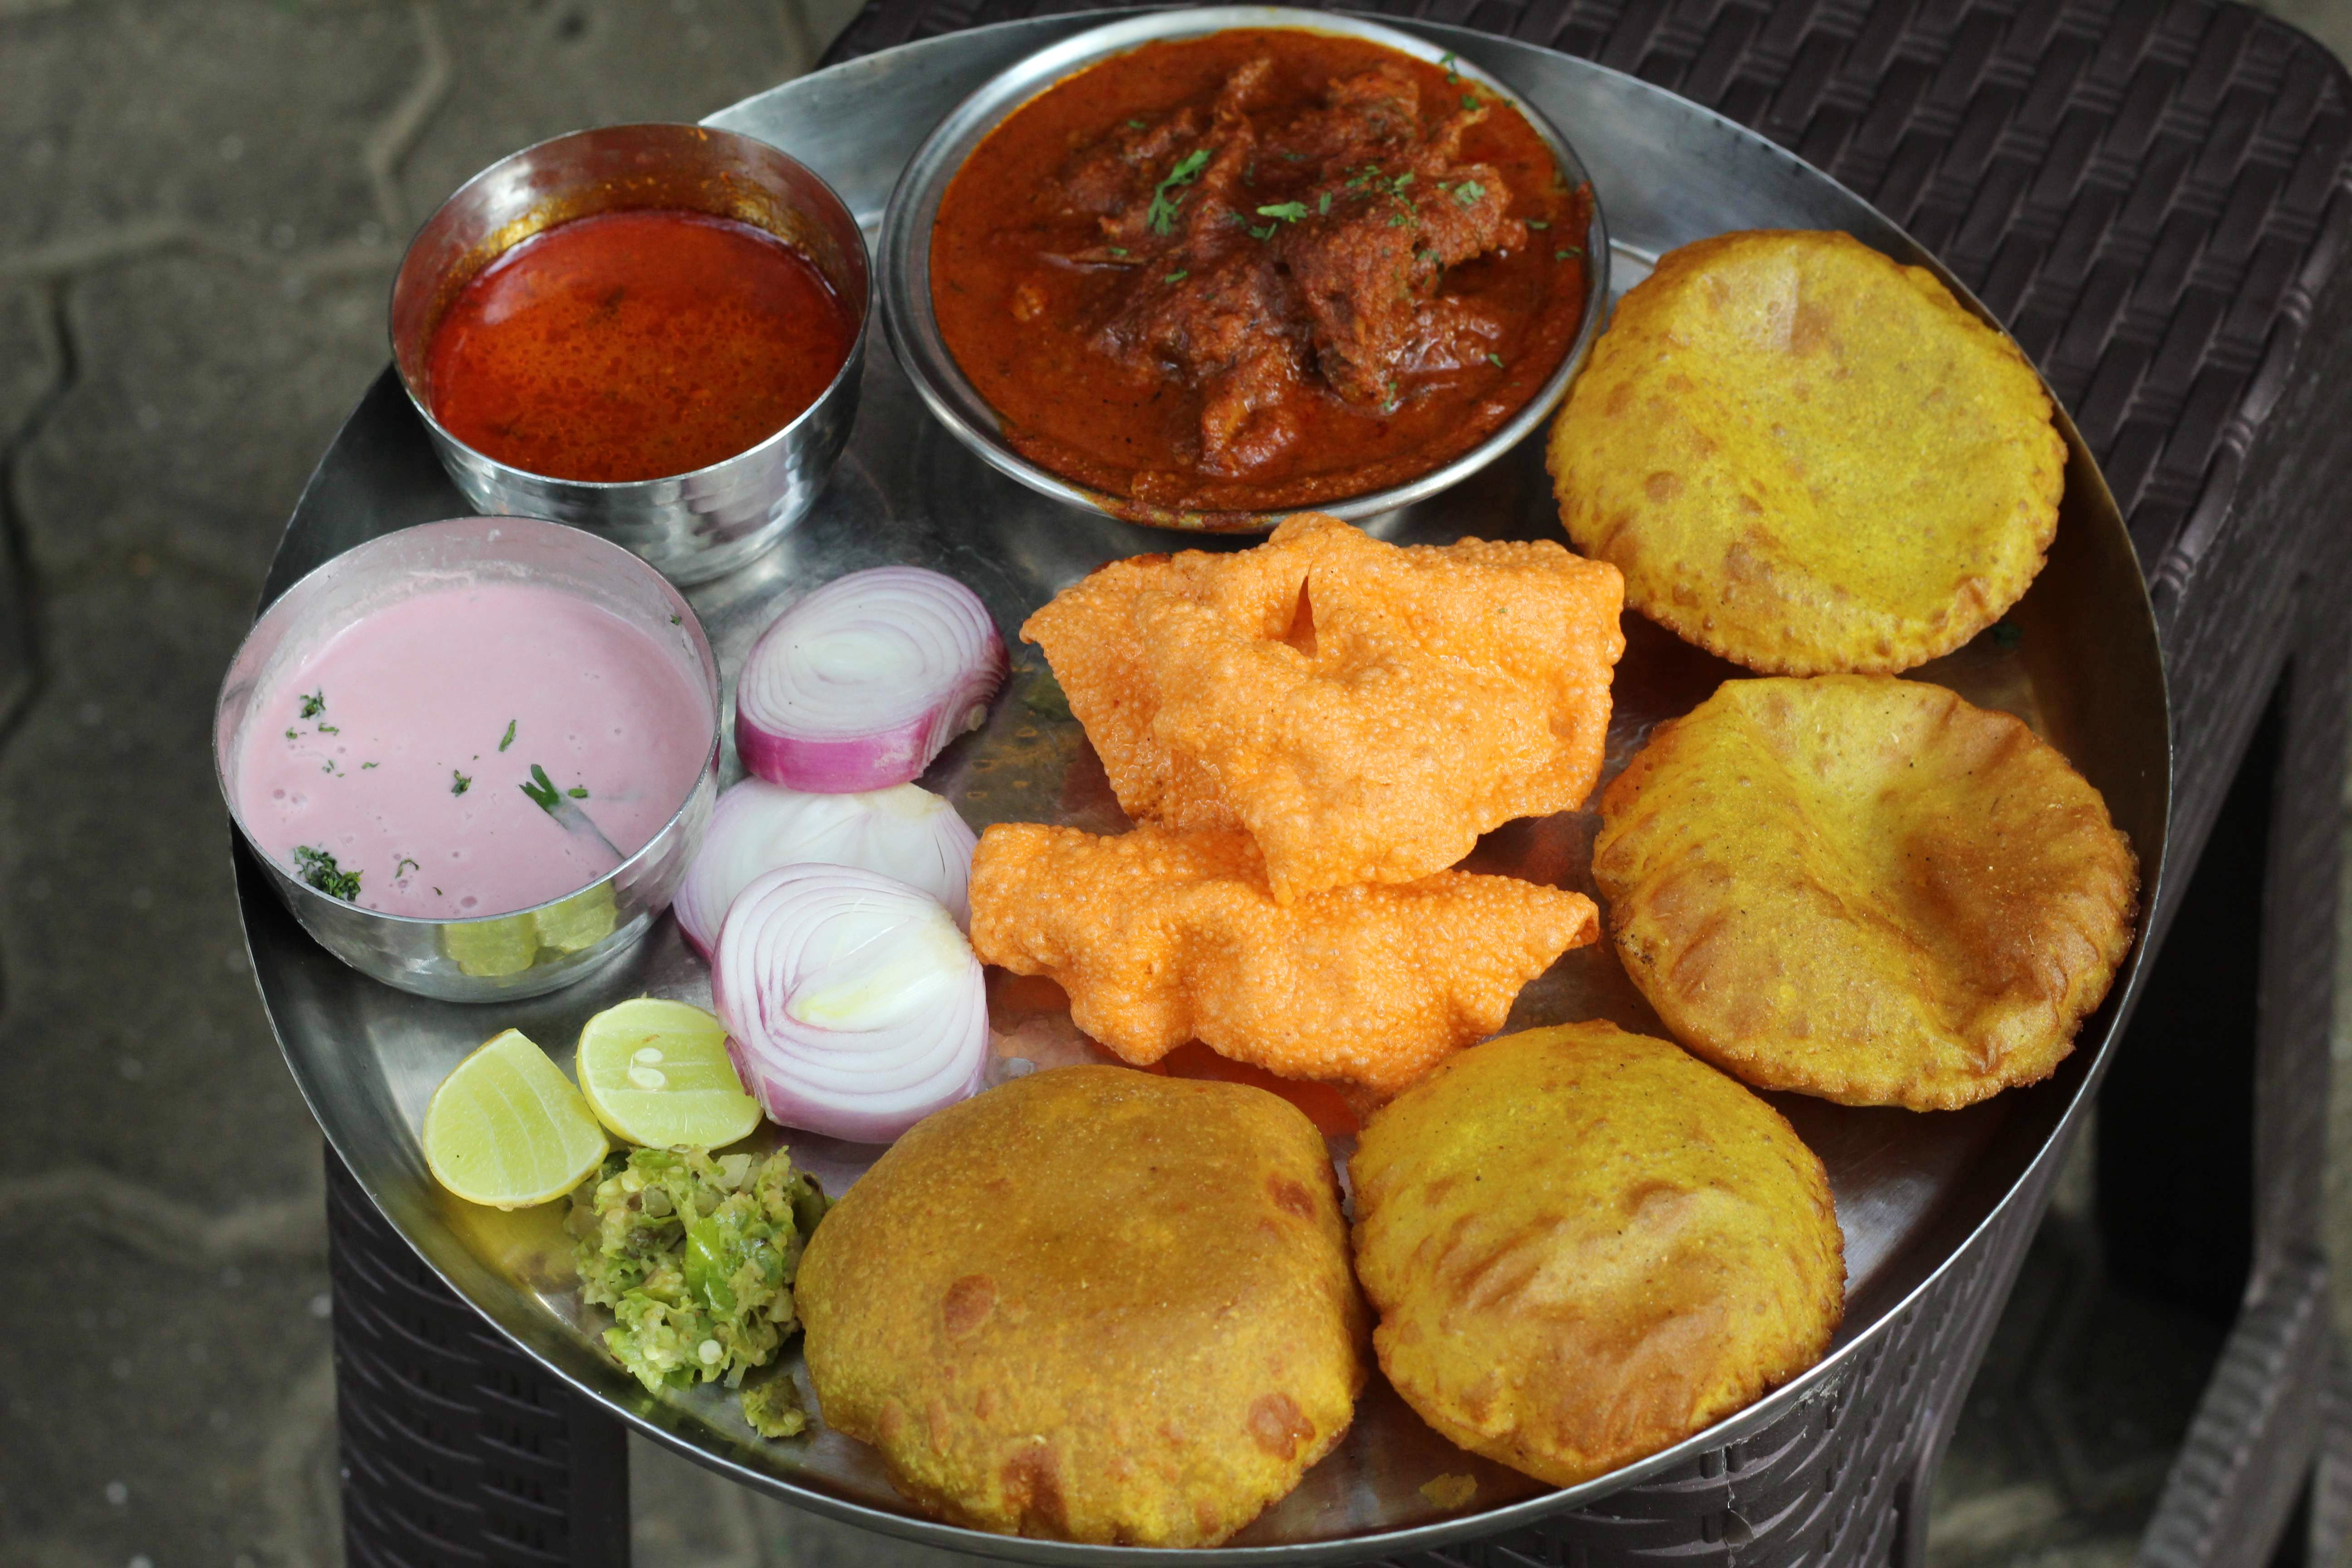 Dish,Food,Cuisine,Ingredient,Puri,Fried food,Pakora,Produce,Indian cuisine,Staple food